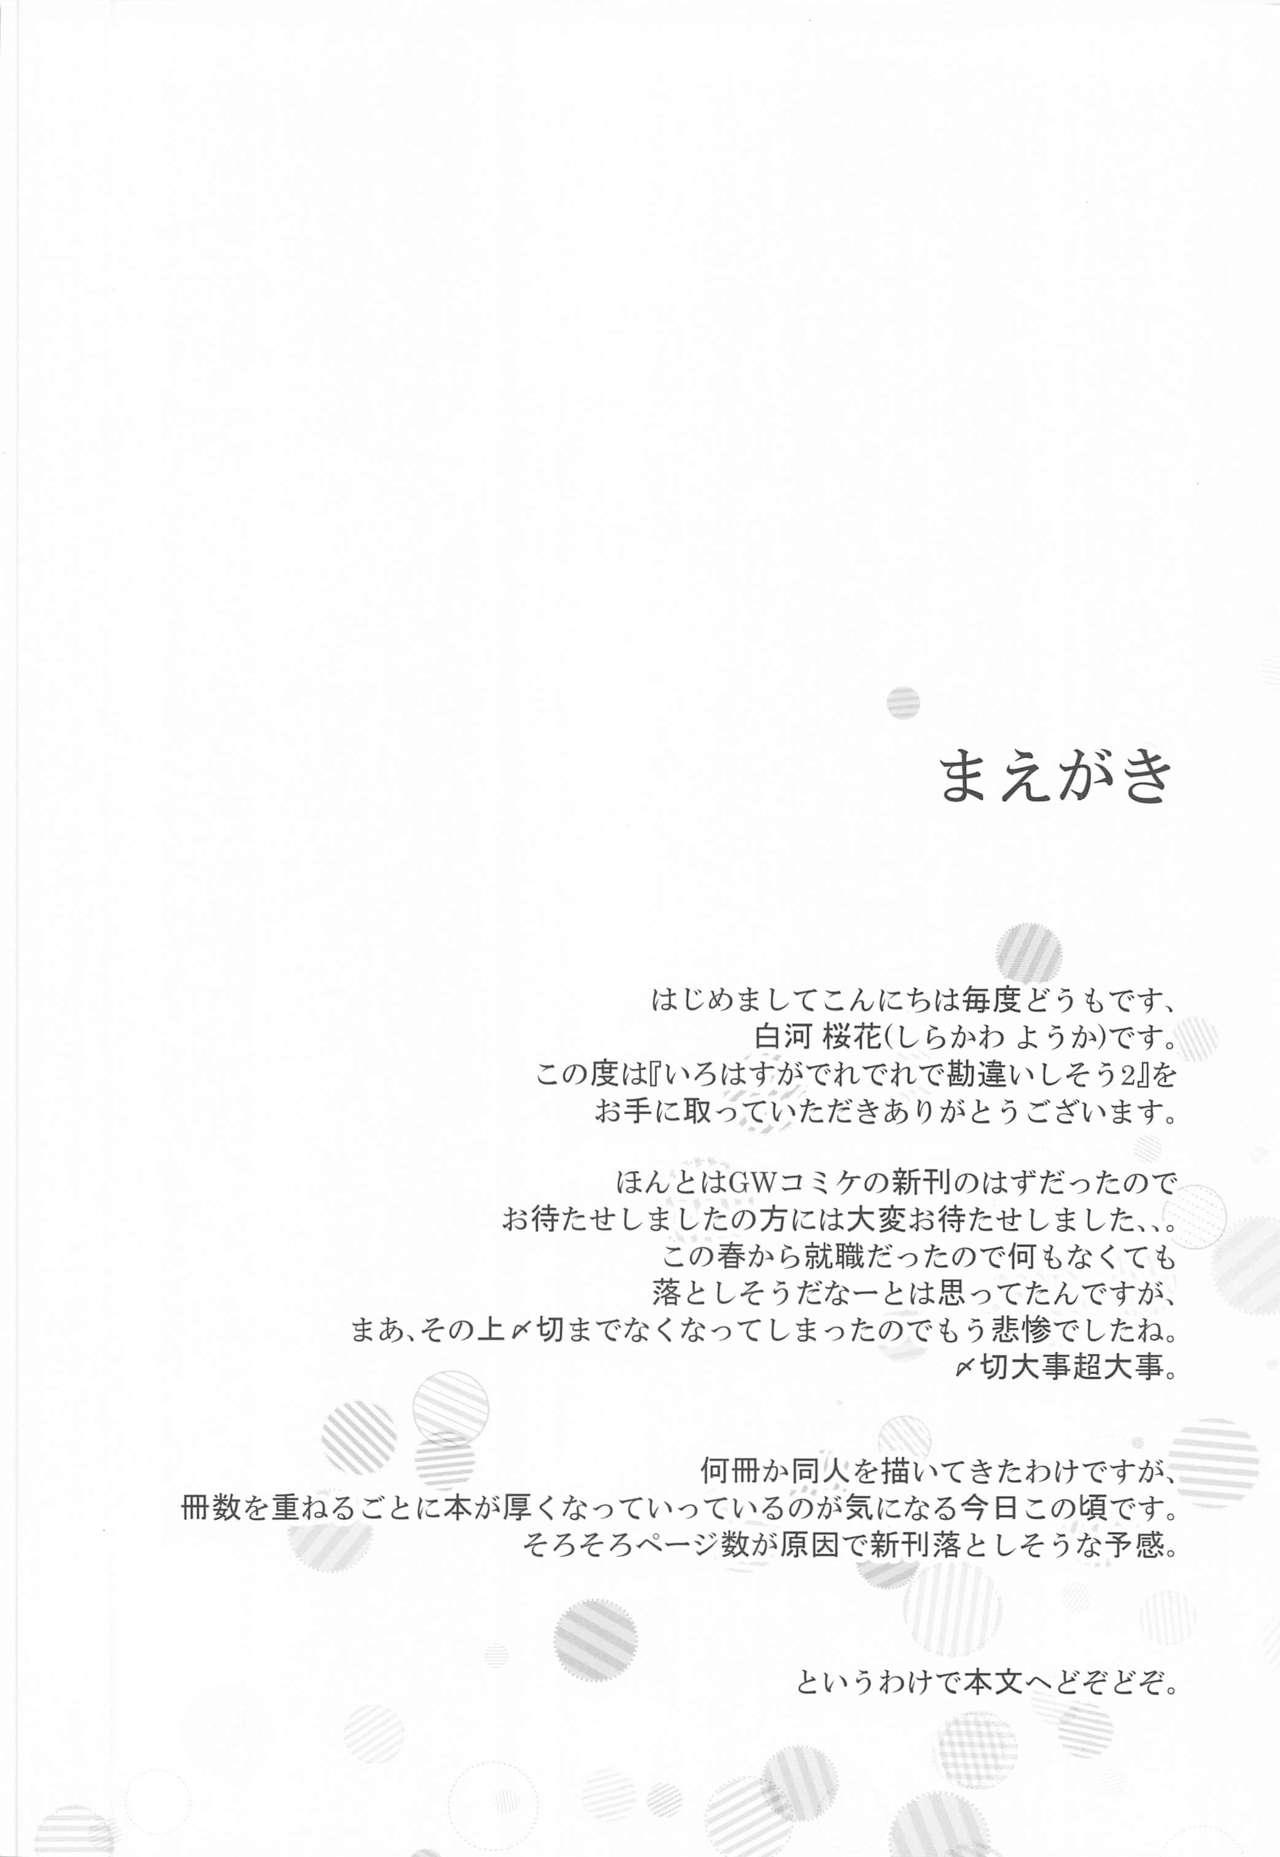 Throat Irohasu ga Deredere de Kanchigai Shisou 2 - Yahari ore no seishun love come wa machigatteiru Trio - Page 3